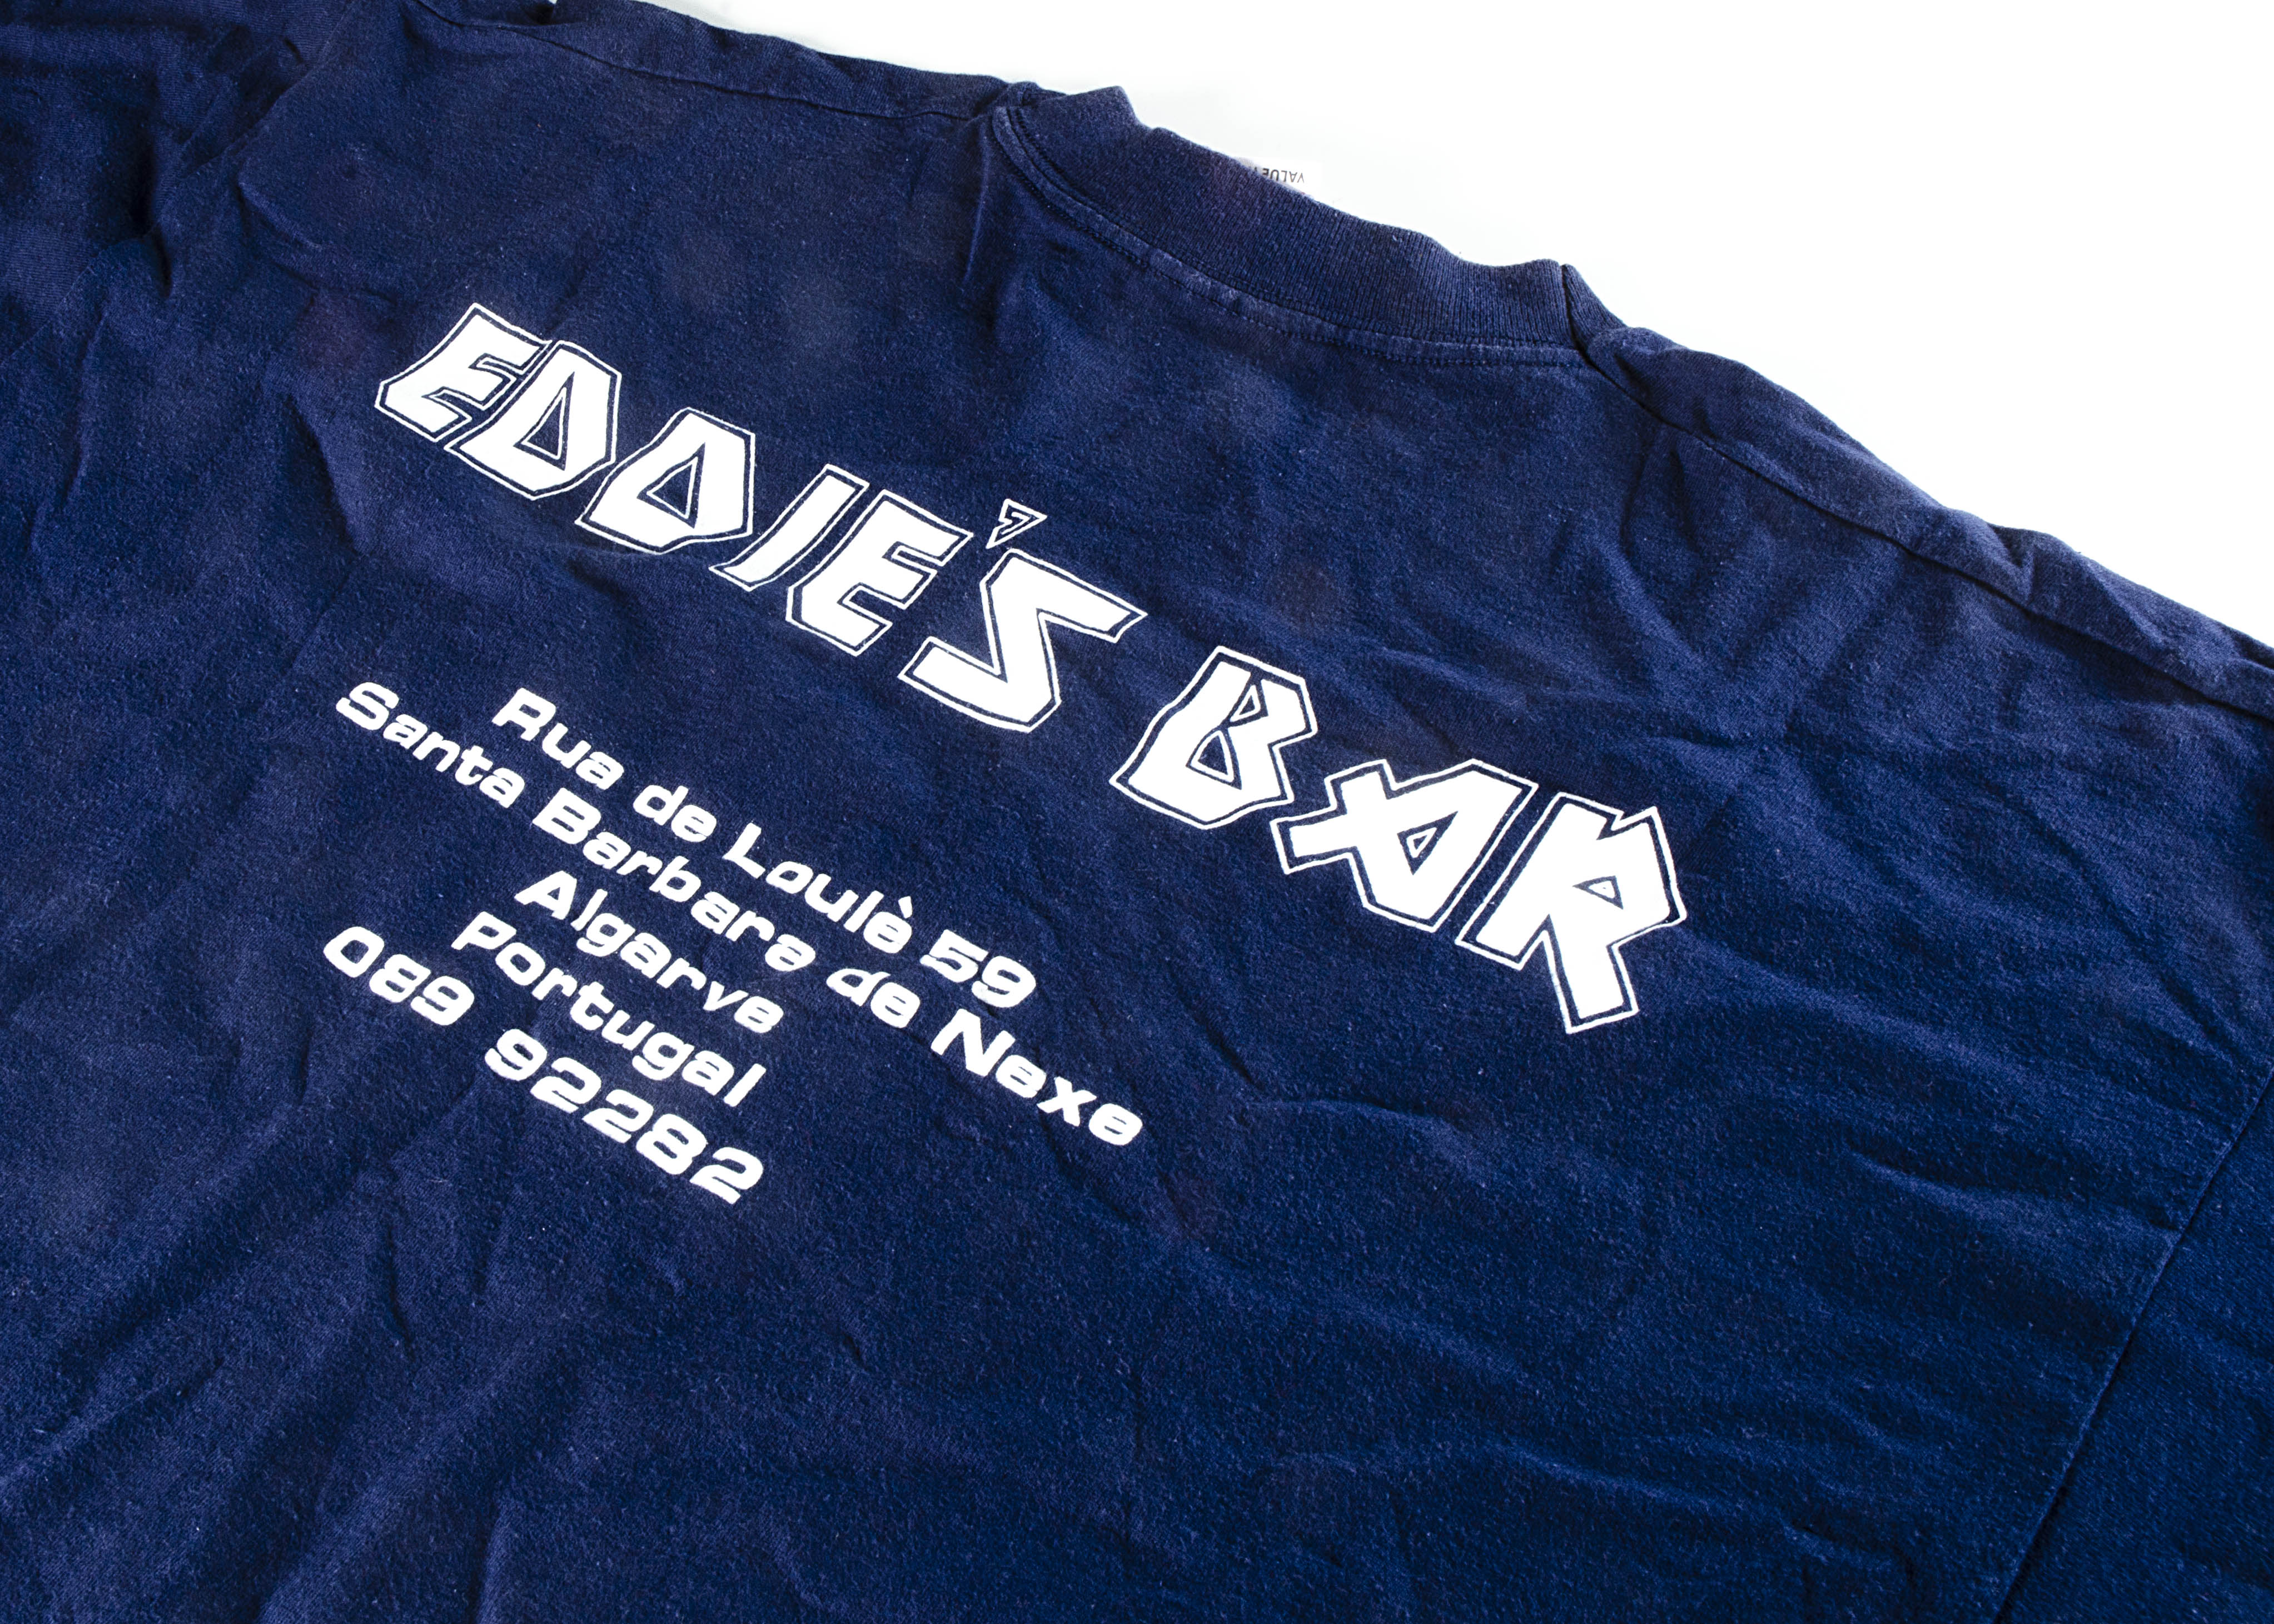 Iron Maiden Eddie 'T' Shirt, Iron Maiden 'T' shirt - Eddie's Bar 1989 blue shirt to reverse 'Eddie's - Image 2 of 5